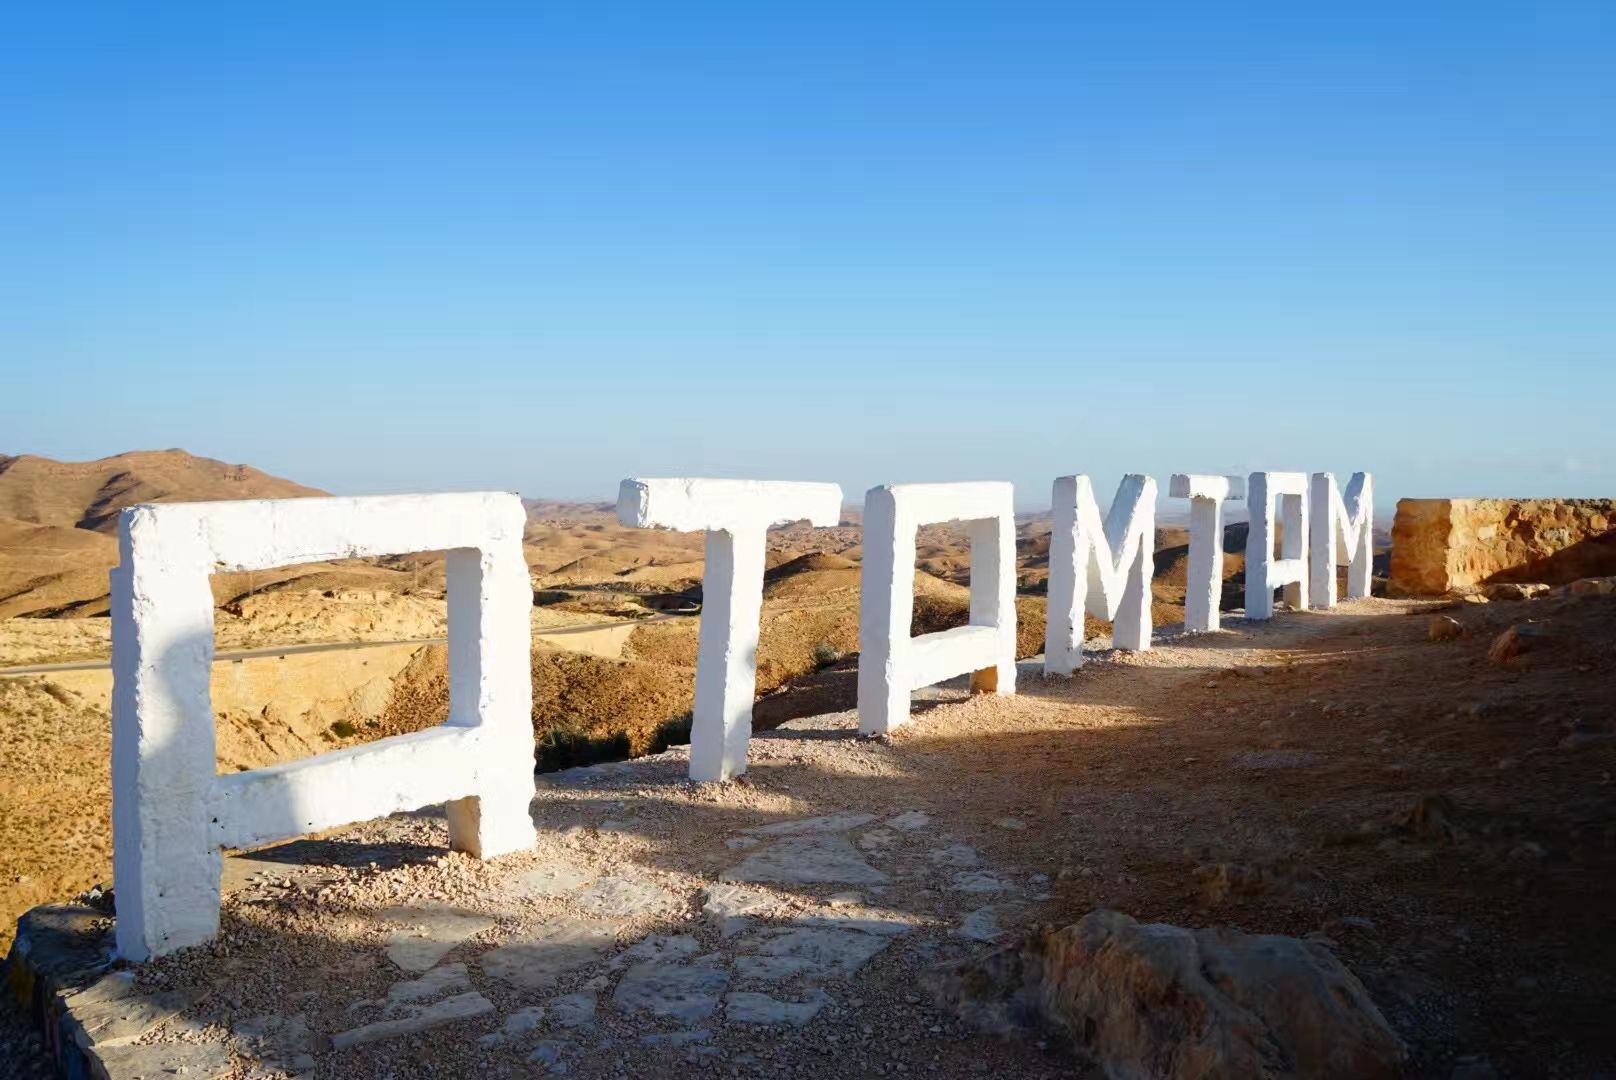 马特马他，从山脊中凿出来的柏柏尔人的家园。位于突尼斯的东南部，是由黄土、砾石构成的崎岖山区，既没有苍